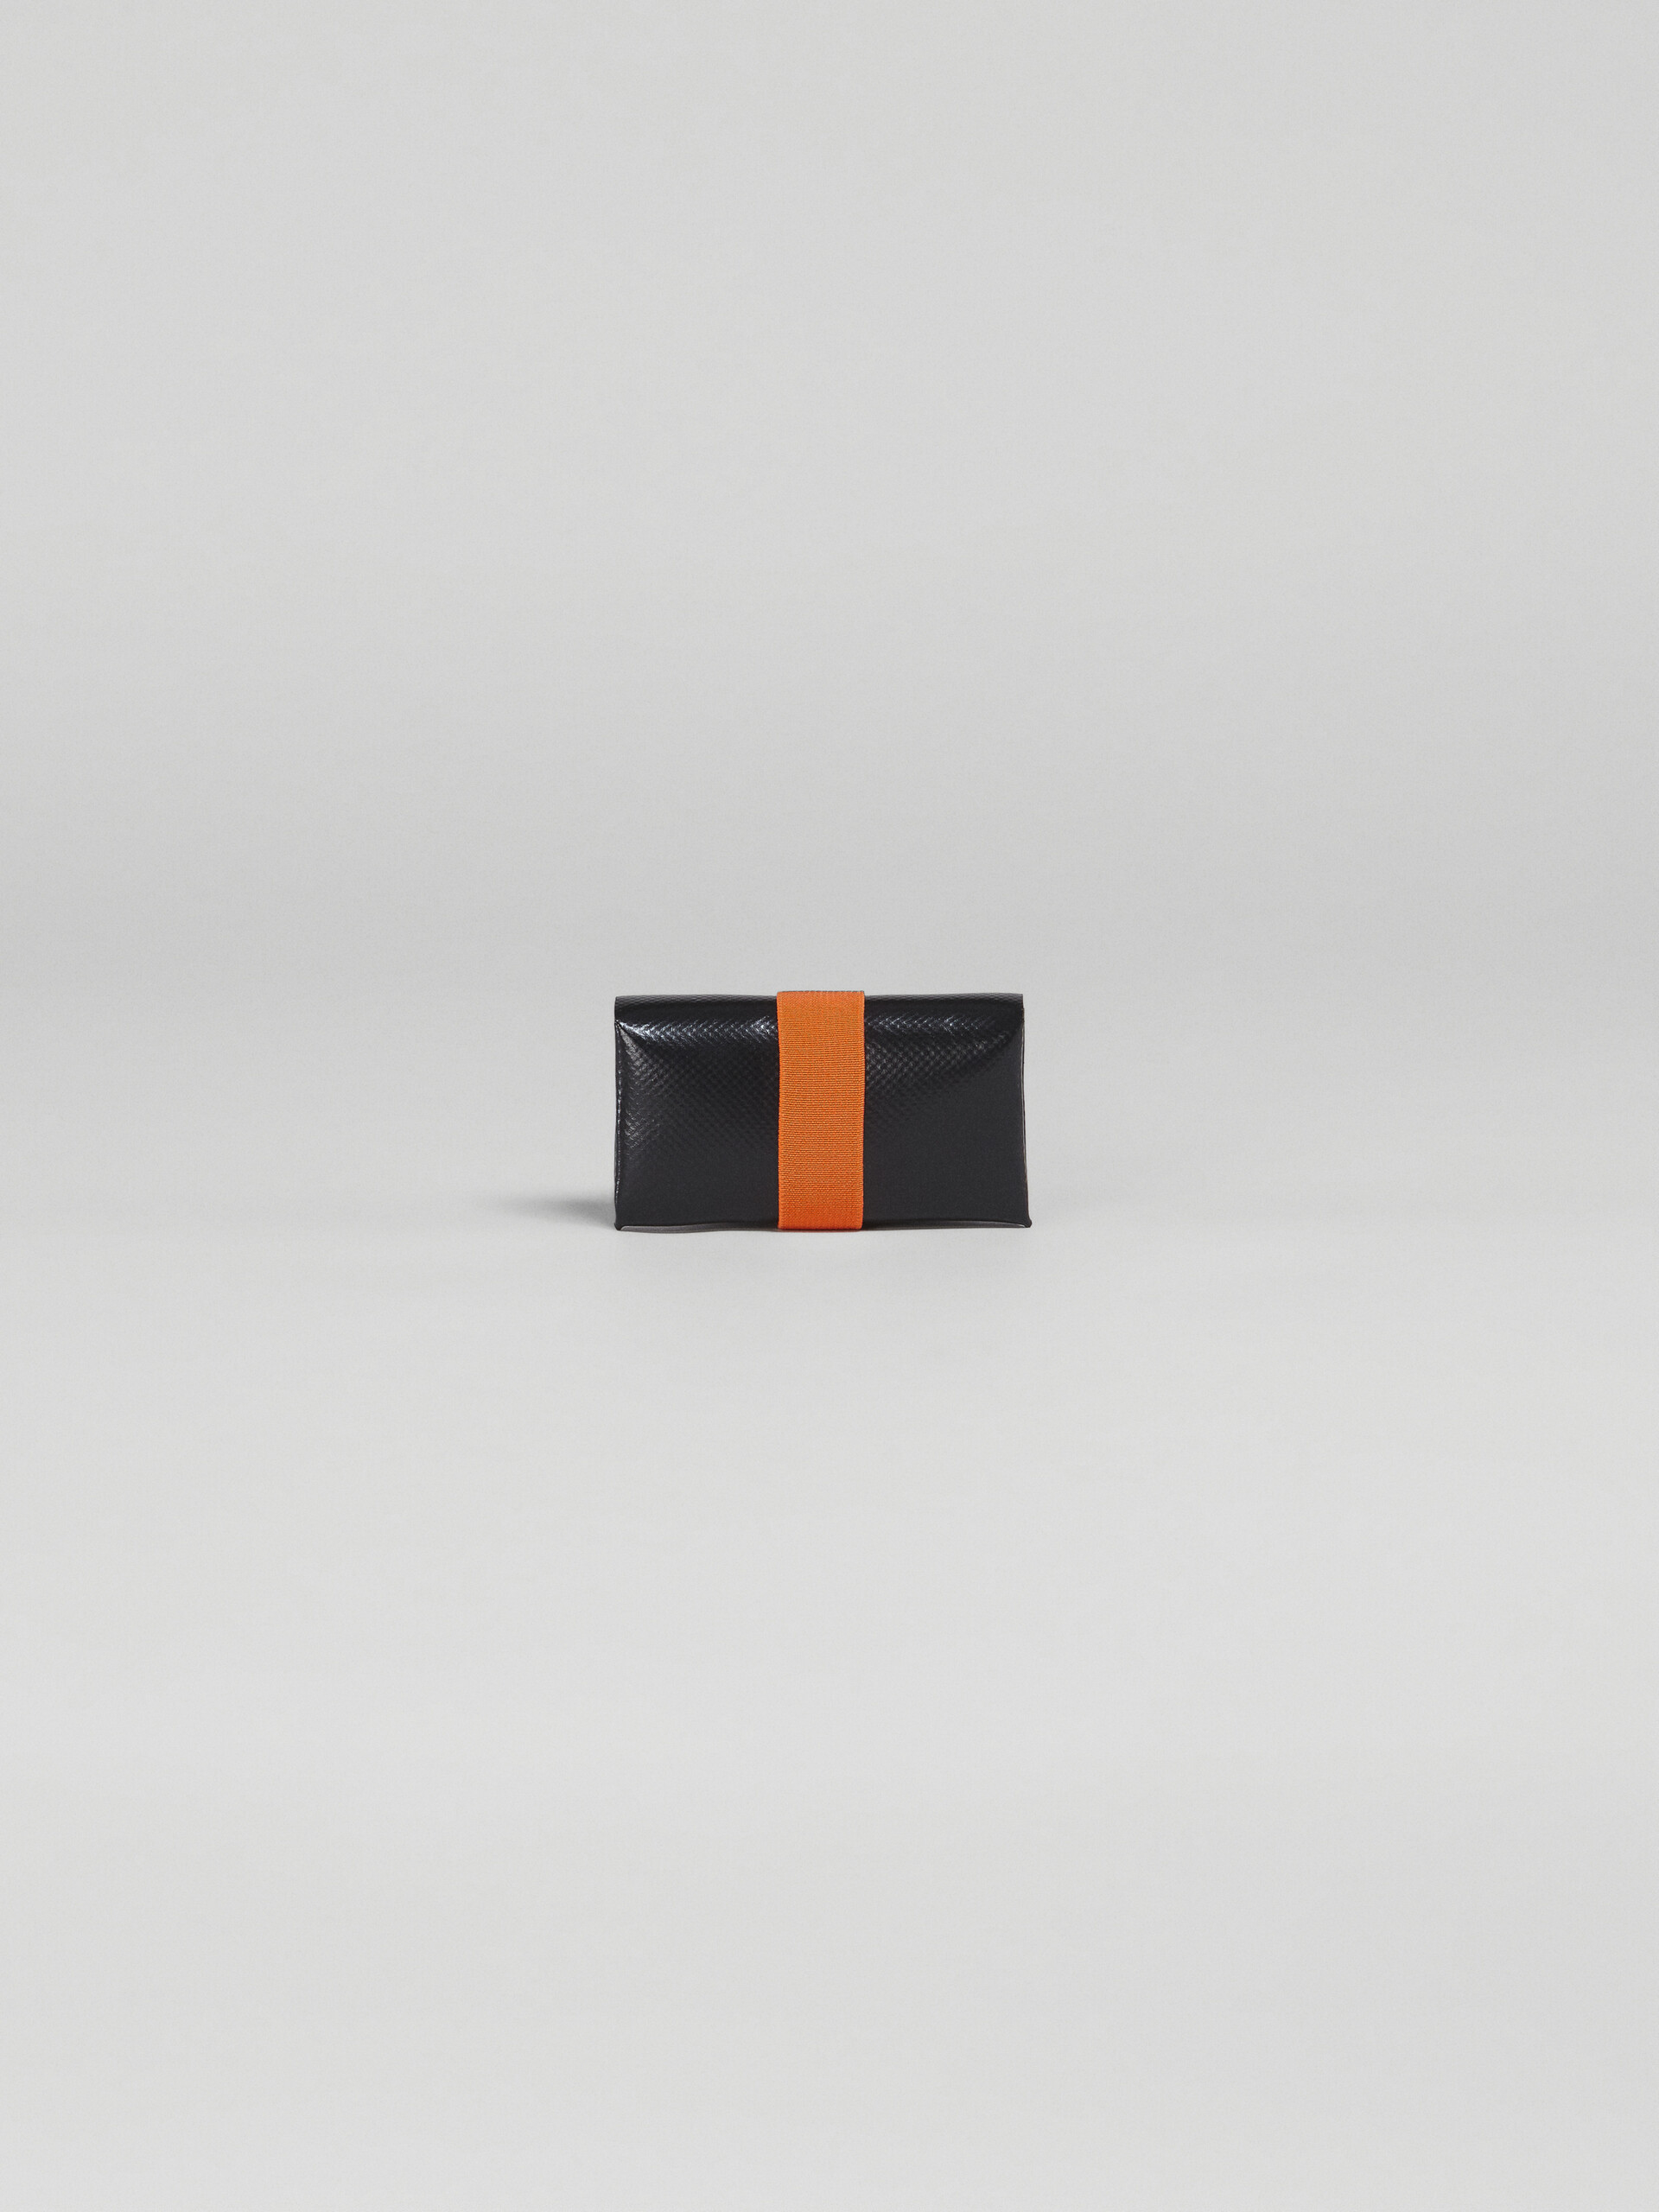 Portefeuille origami orange et noir - Portefeuilles - Image 3